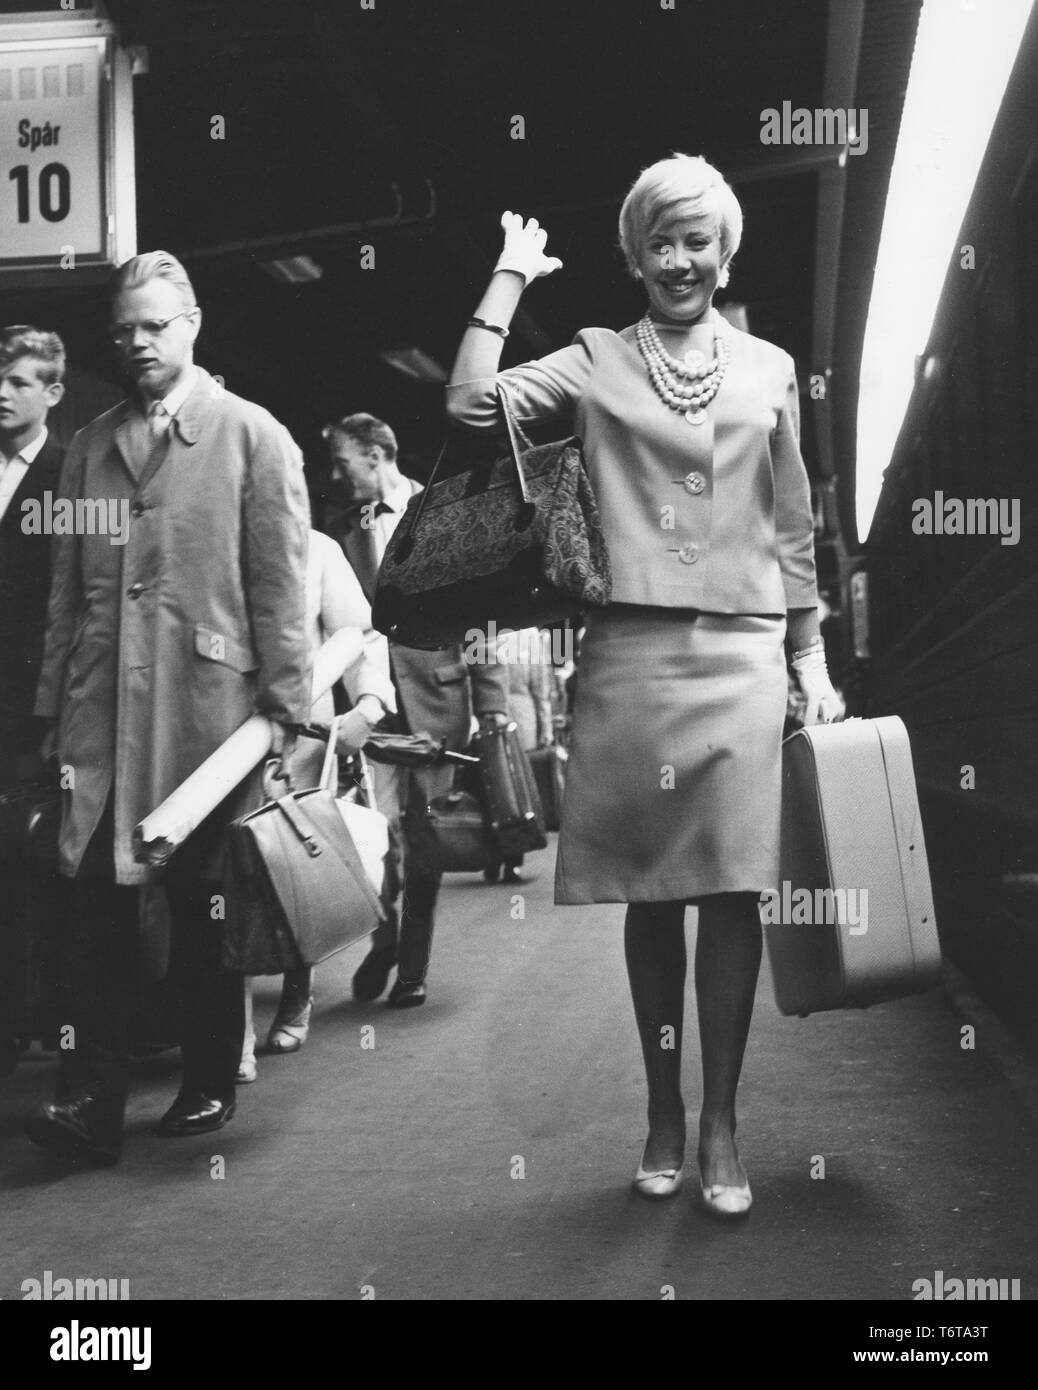 Reisen mit der Bahn in den 60er Jahren. Eine junge blonde Frau kommt am Bahnhof und Wellen glücklich. Sie ist hübsch in einem typischen 2-teilig Rock und Jacke bekleidet. Sie ist auch das Tragen einer passende Halskette und weiße Handschuhe. Schweden 1961 Stockfoto